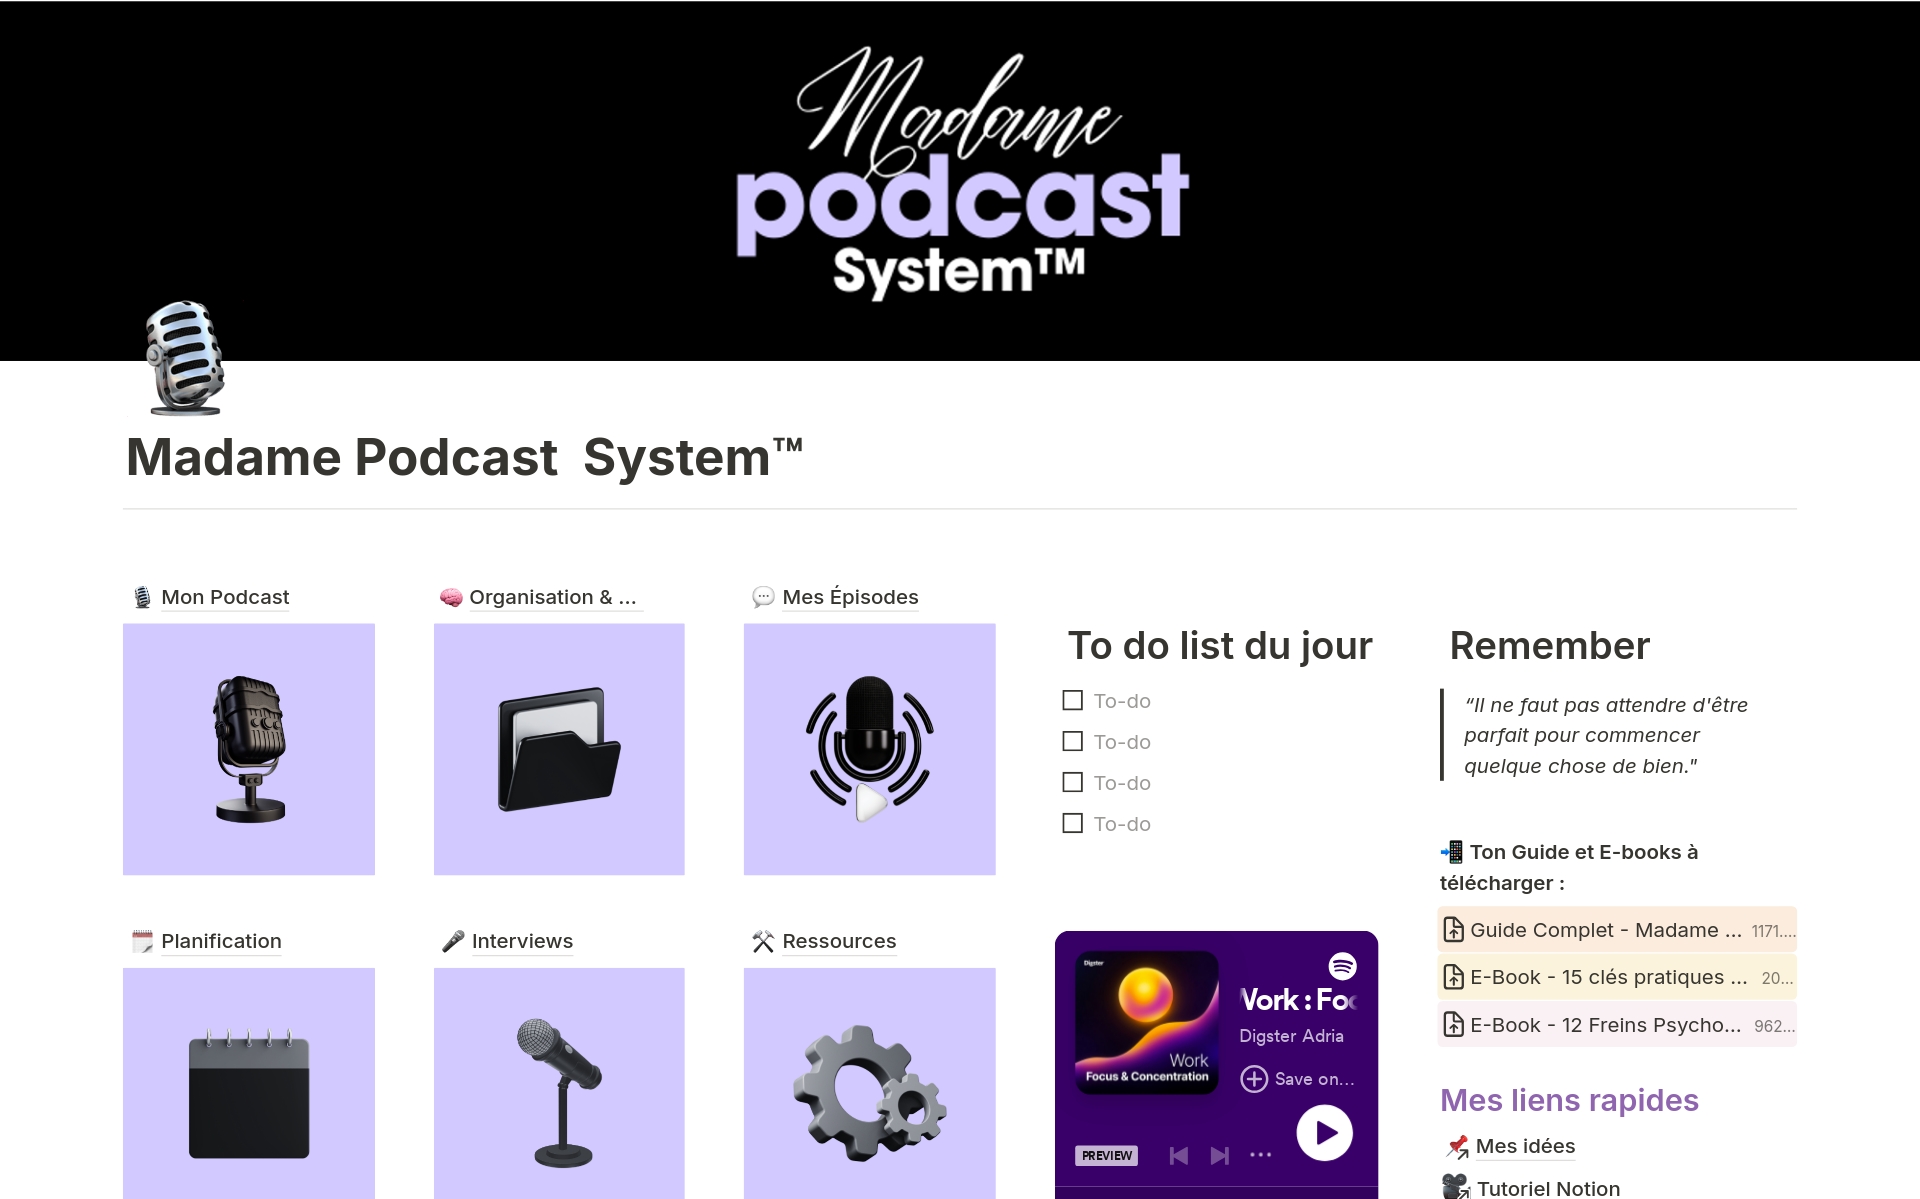 Le Gestionnaire Tout-En-Un pour Structurer, Créer et Diffuser ton Podcast.
Le Madame Podcast System™ est un système d'organisation complet conçu pour t'aider dans la création et la gestion de ton podcast. Efficace, intuitif et simple d'utilisation !